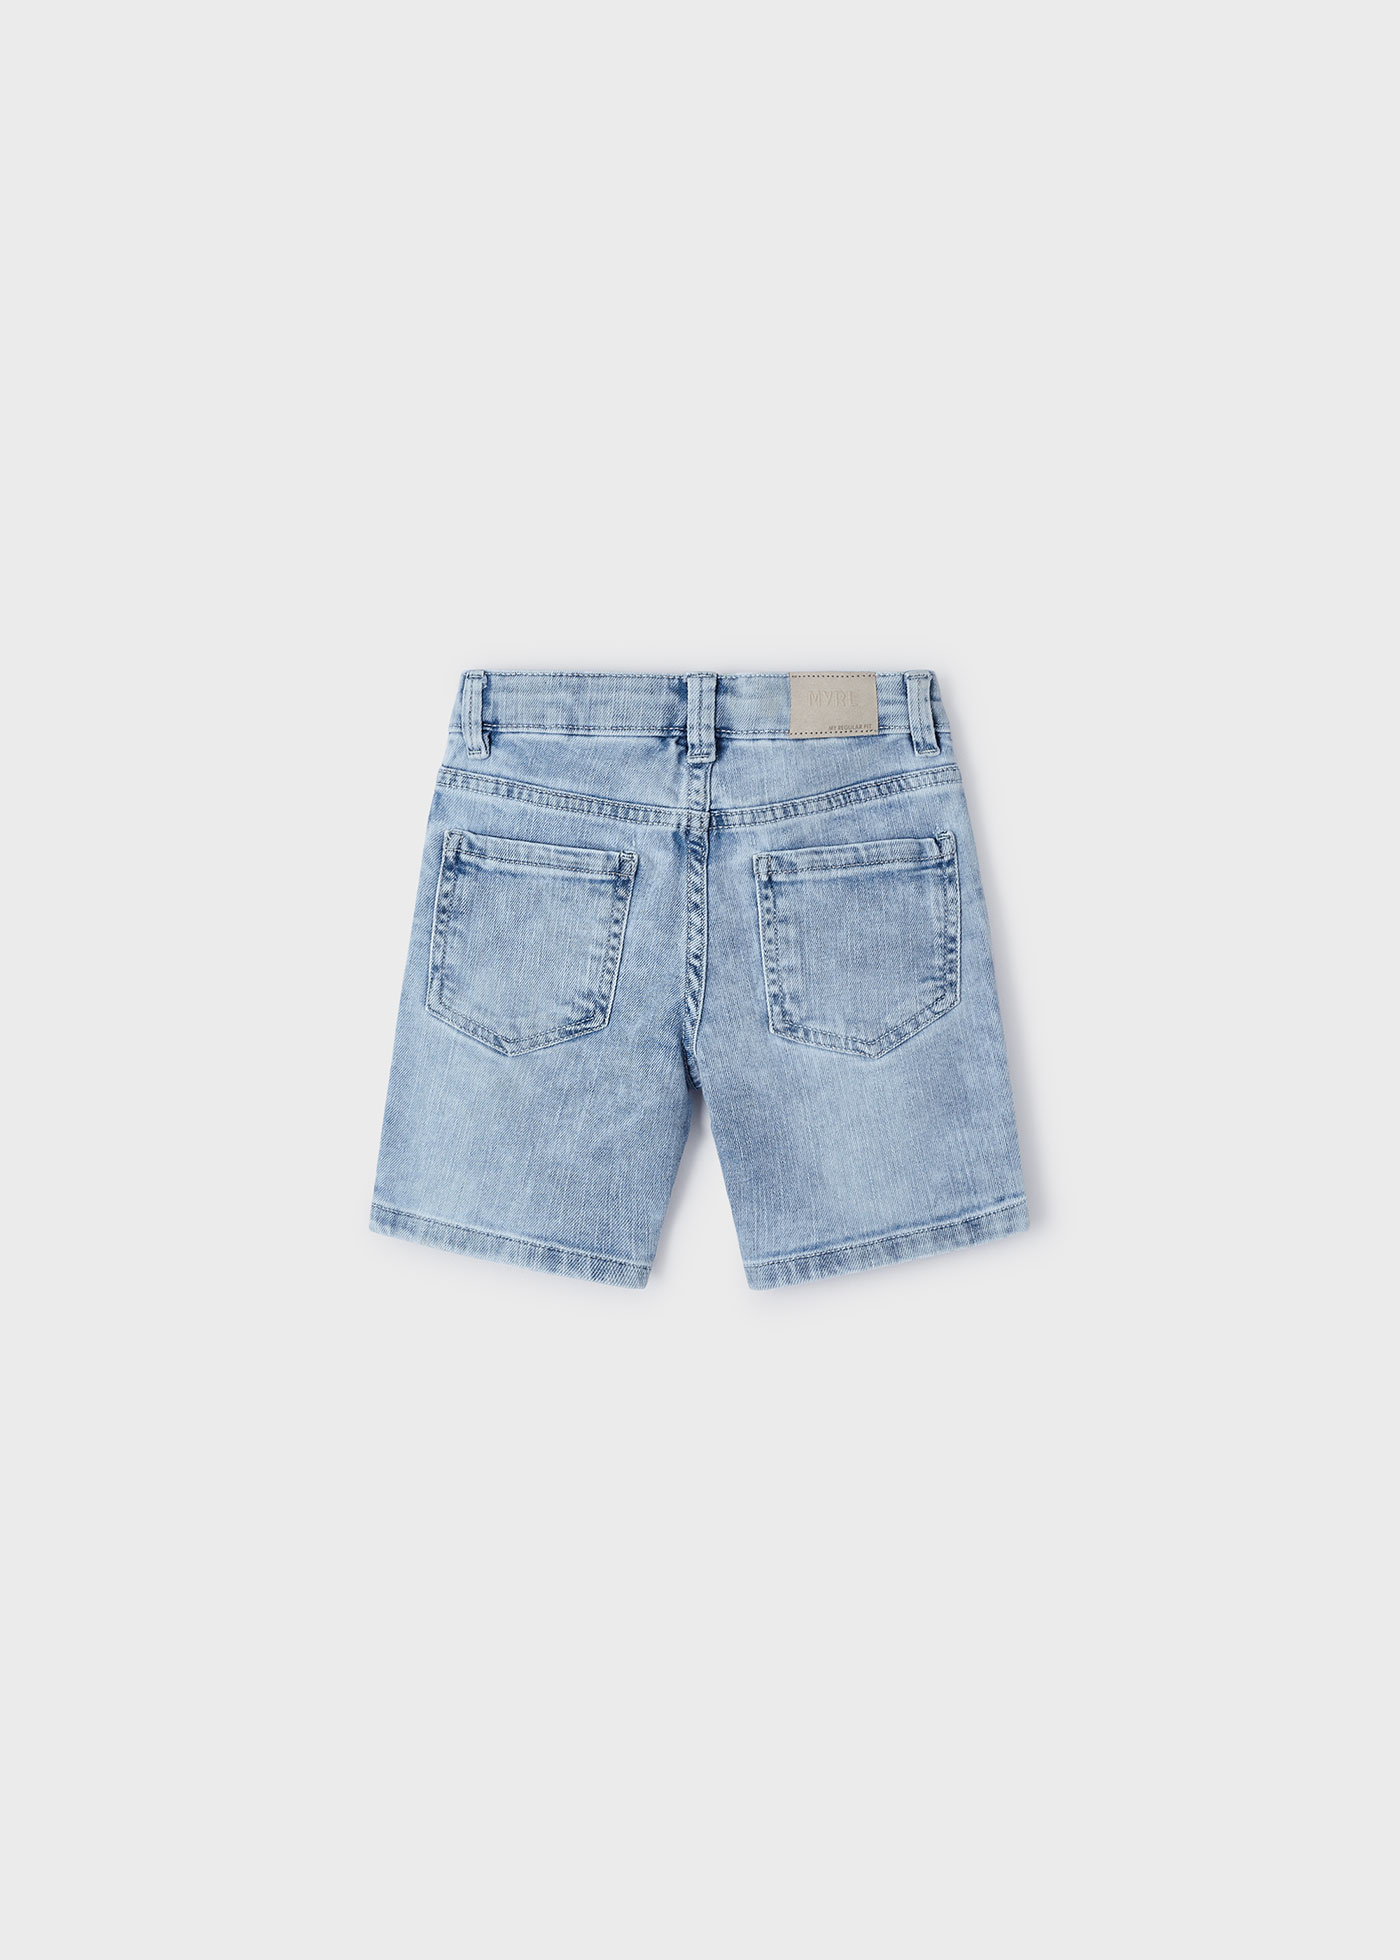 Jeans-Bermudas Better Cotton Jungen